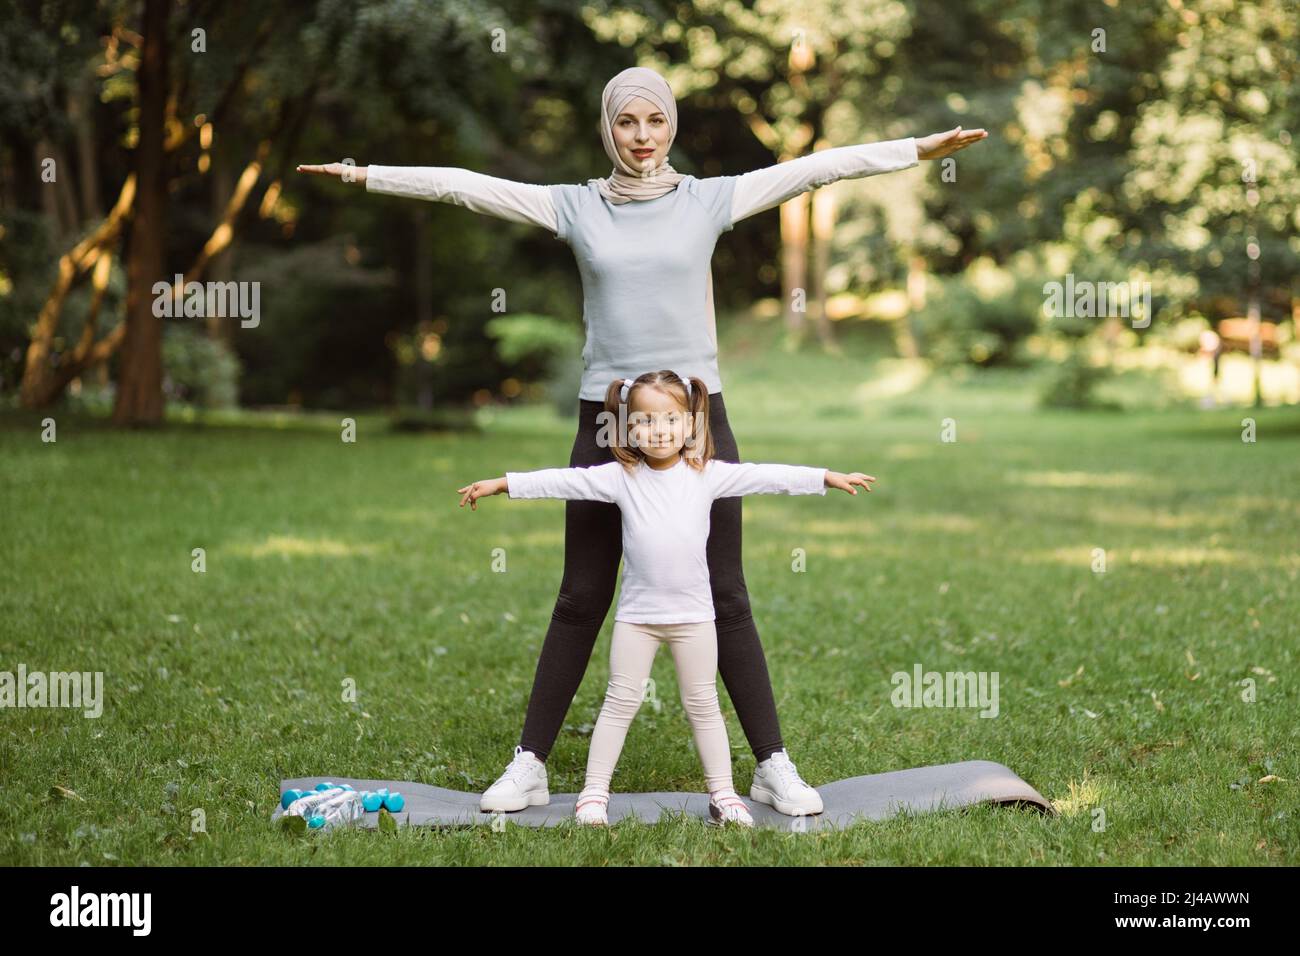 Actividad fitness deportiva familiar. Bonita mujer musulmana en ropa deportiva y hijab y su hija lindo hacer ejercicios deportivos, de pie con brazos extendidos juntos en el de